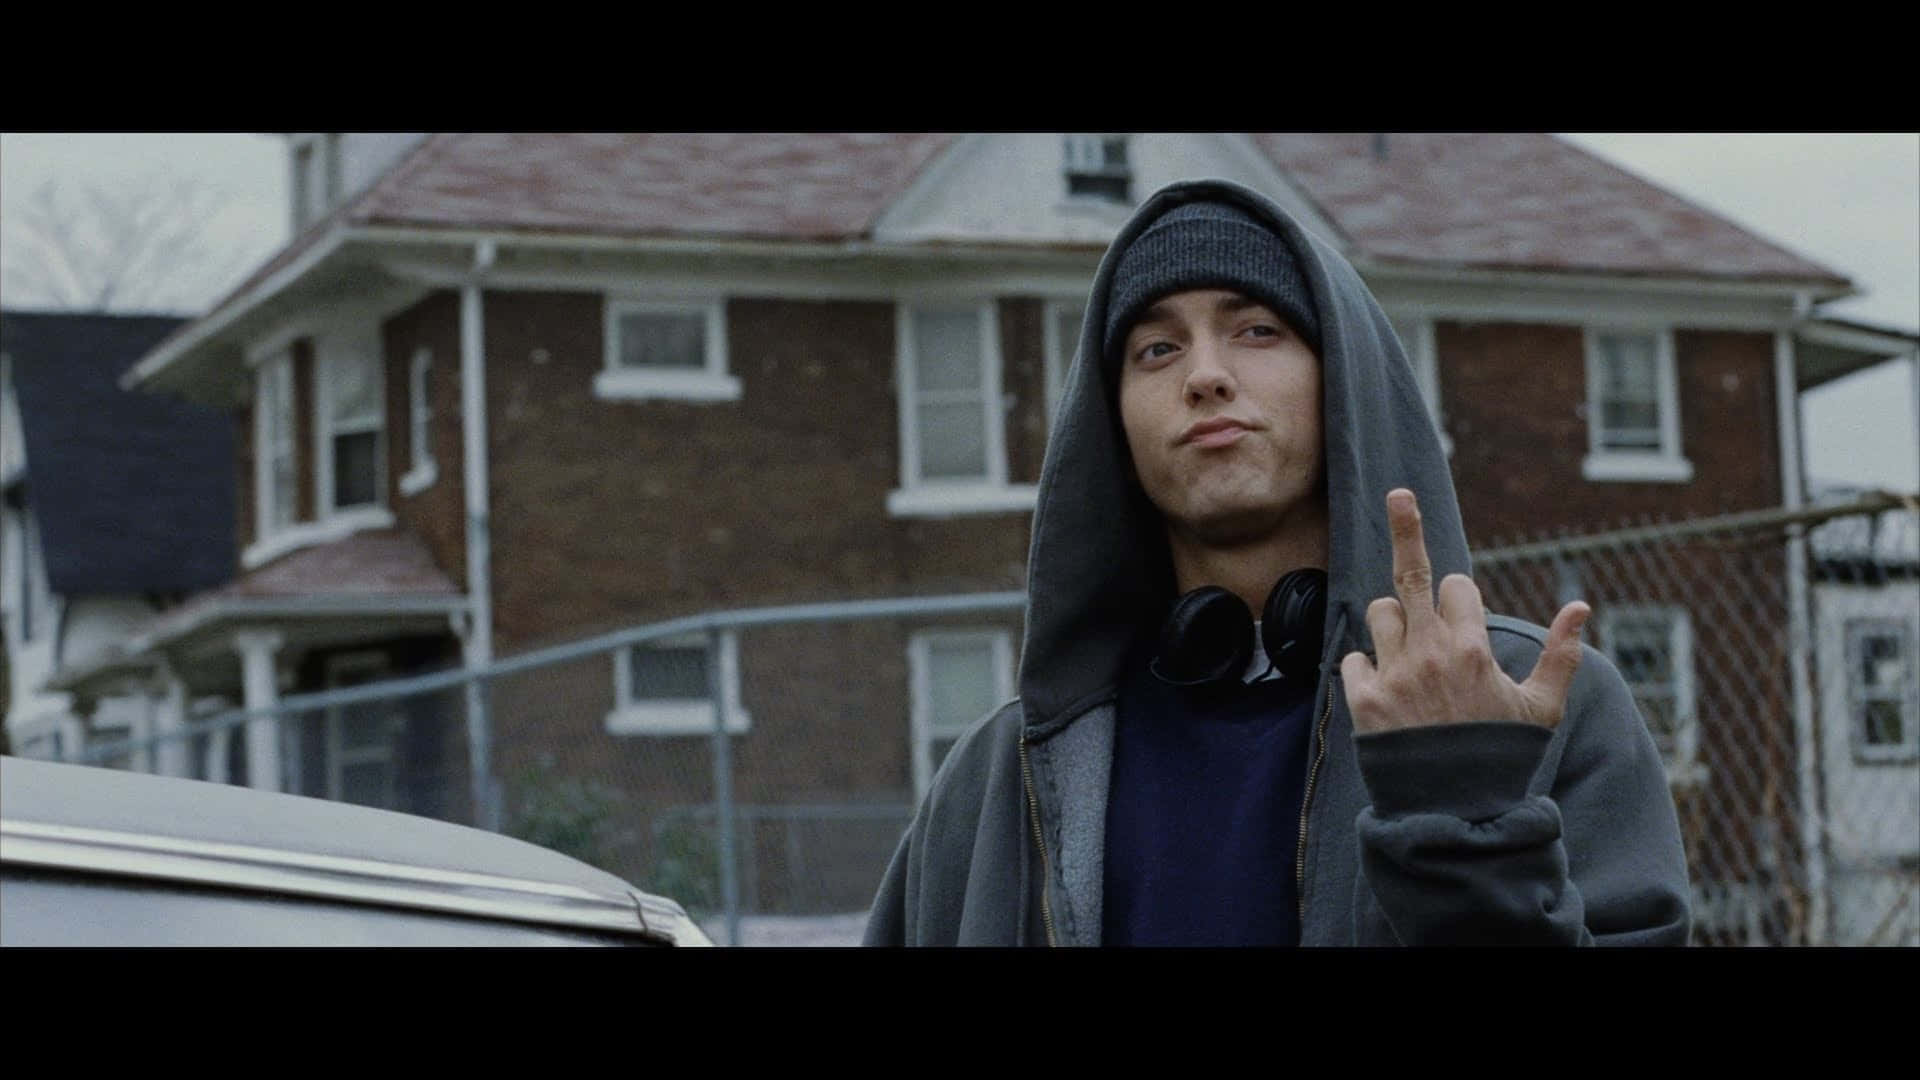 Eminem1920 X 1080 Plano De Fundo.